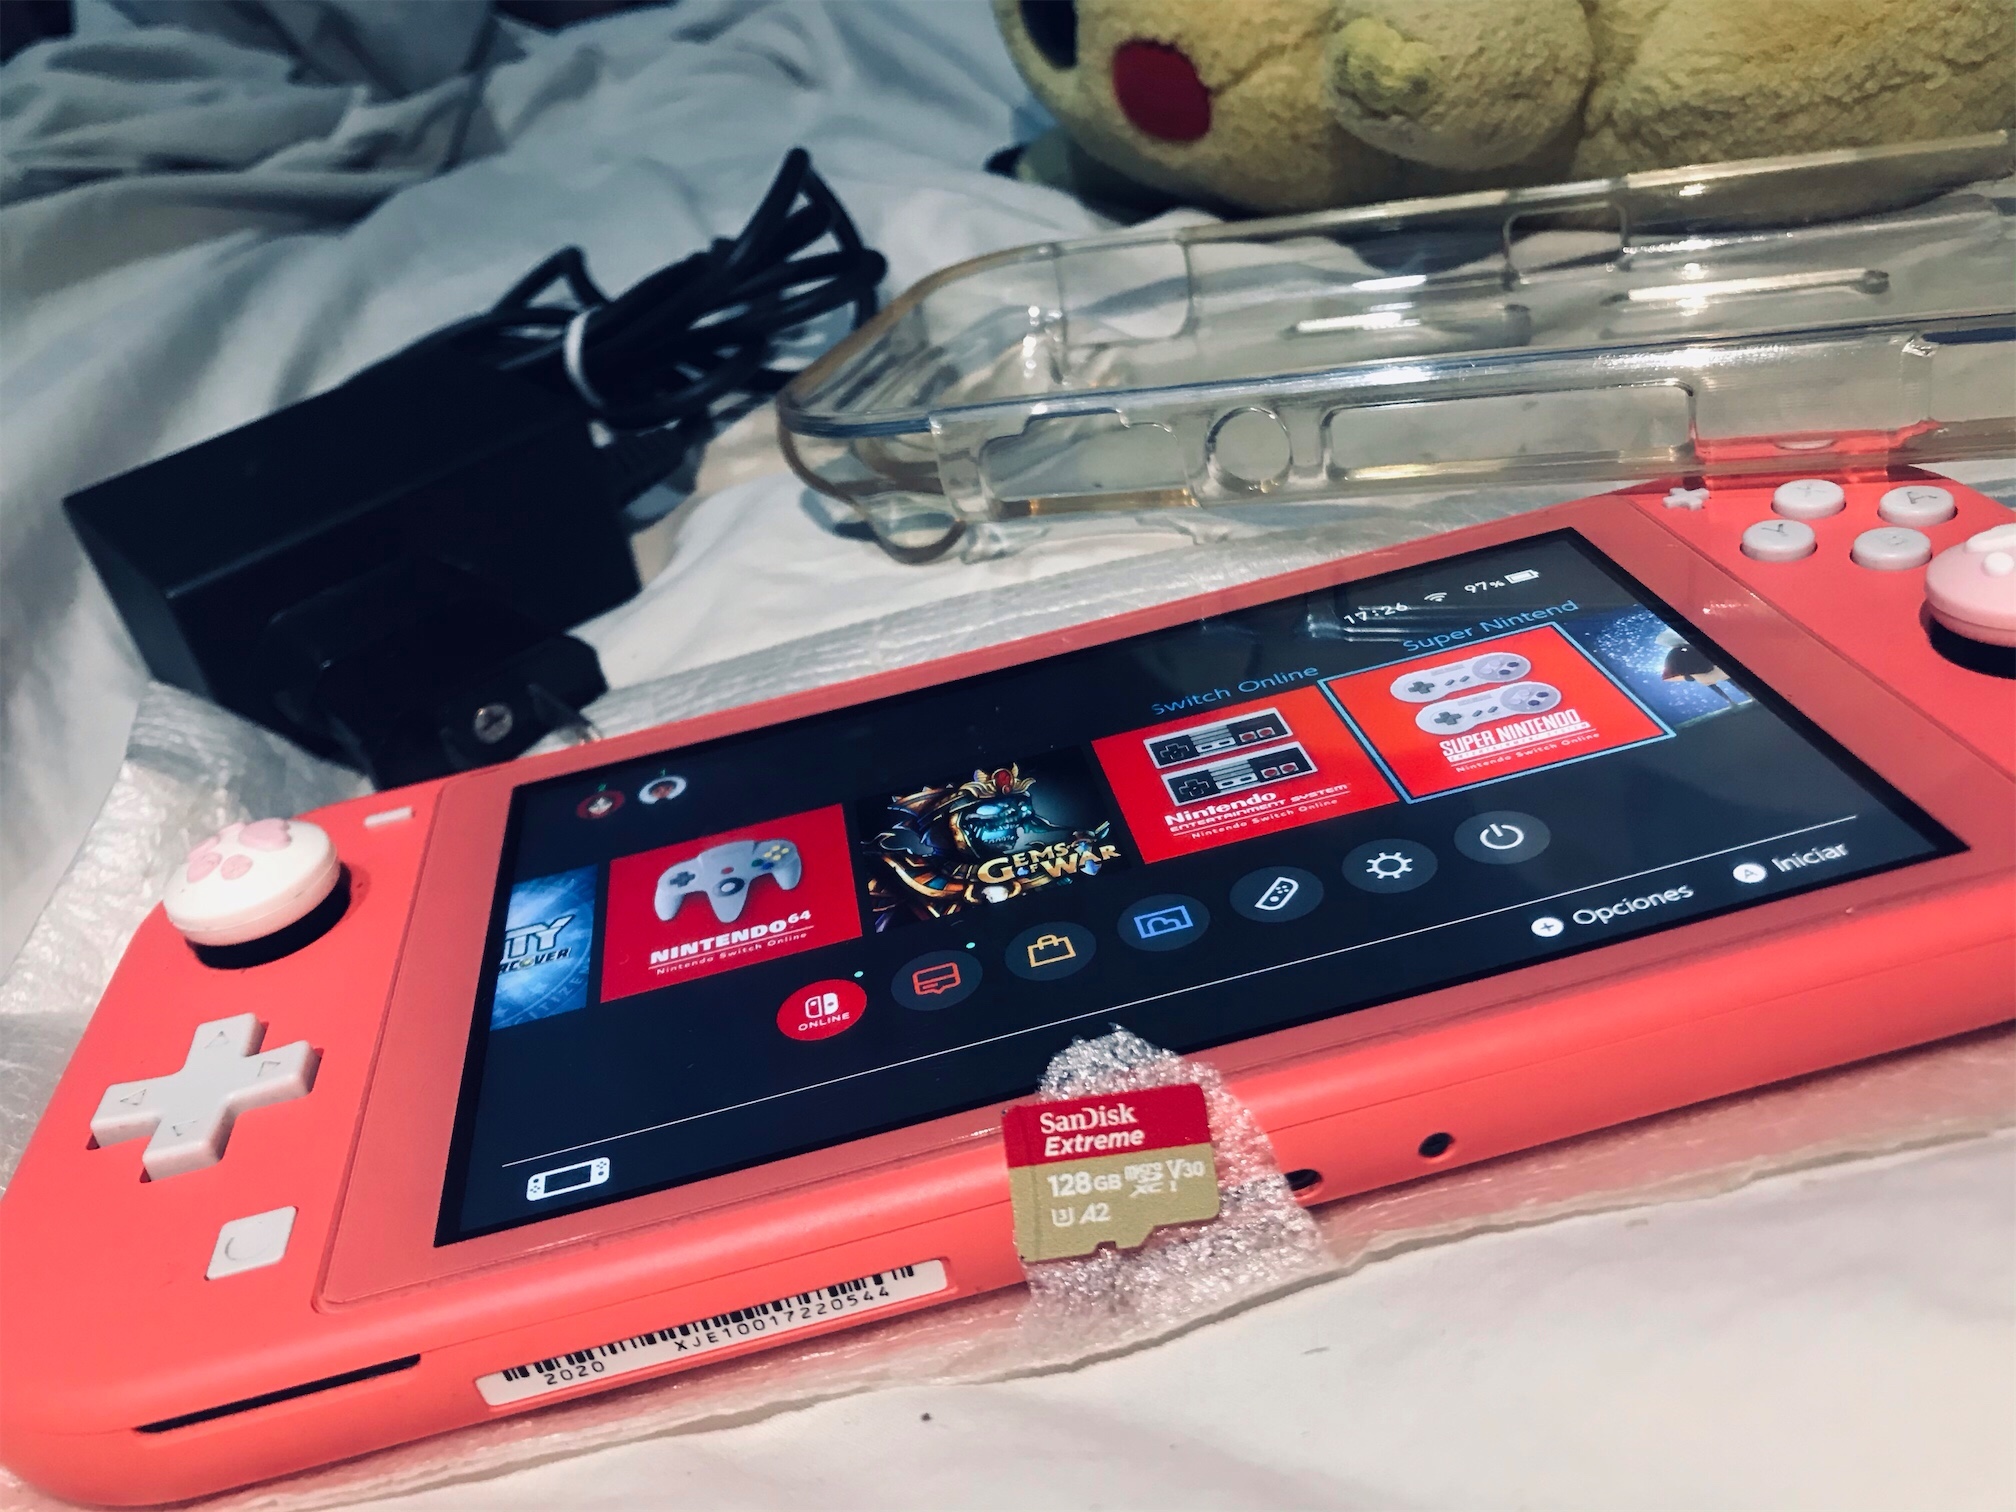 consolas y videojuegos - Nintendo Switch Lite + Memoria + Cargador + Cover.
LEER DESCRIPCIÓN.